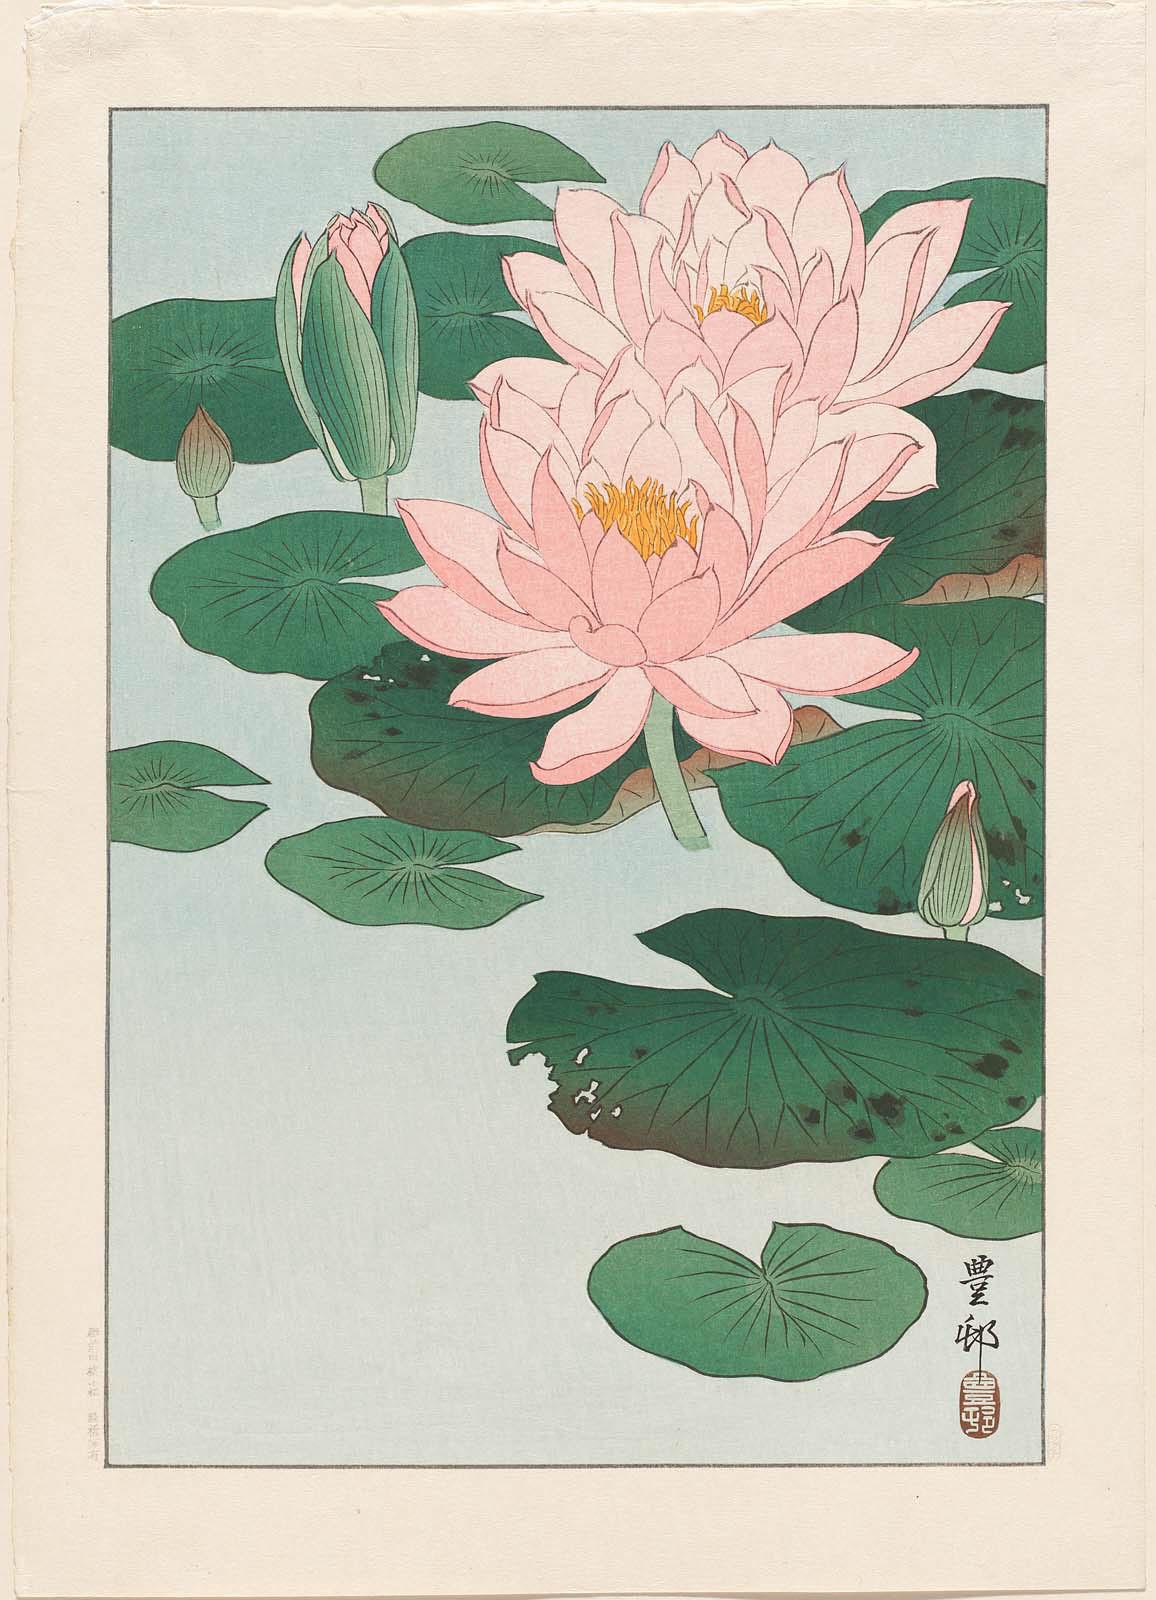 睡蓮 by Ohara Koson - 1920 年代 - 37.6 x 26.9 釐米 